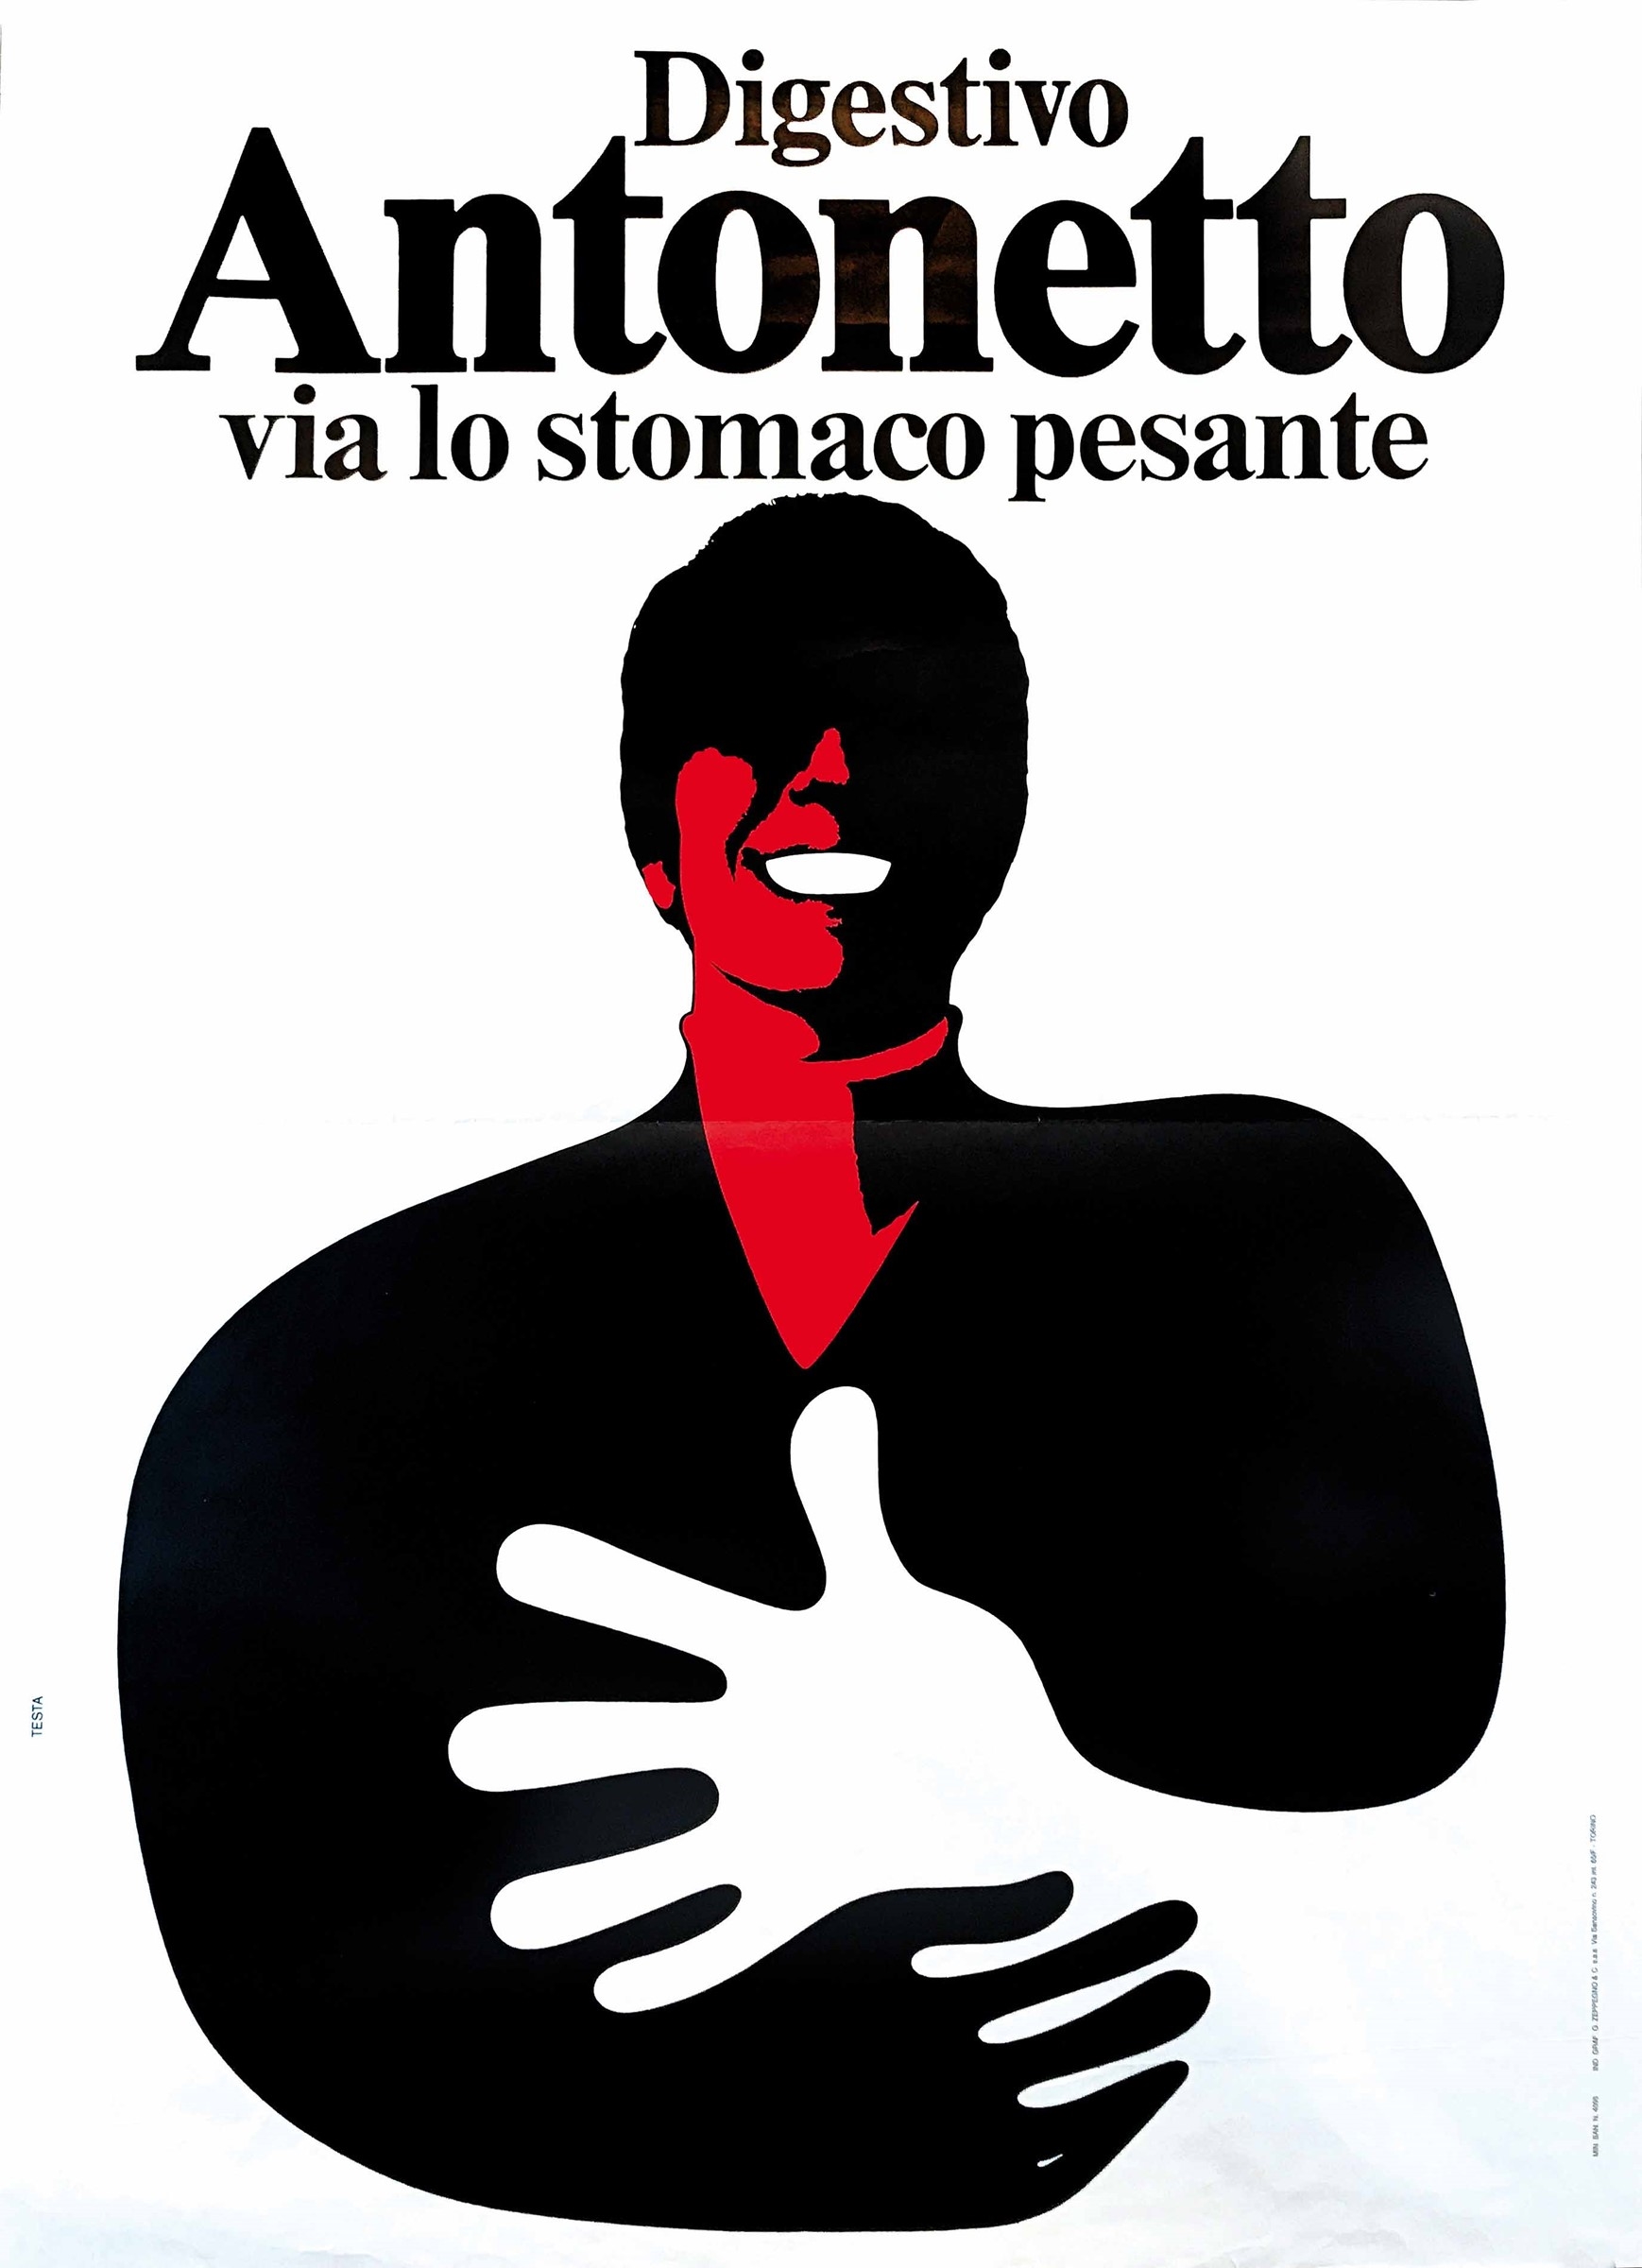 DIGESTIVO ANTONETTO, VIA LO STOMACO PESANTE by Armando Testa, 1974